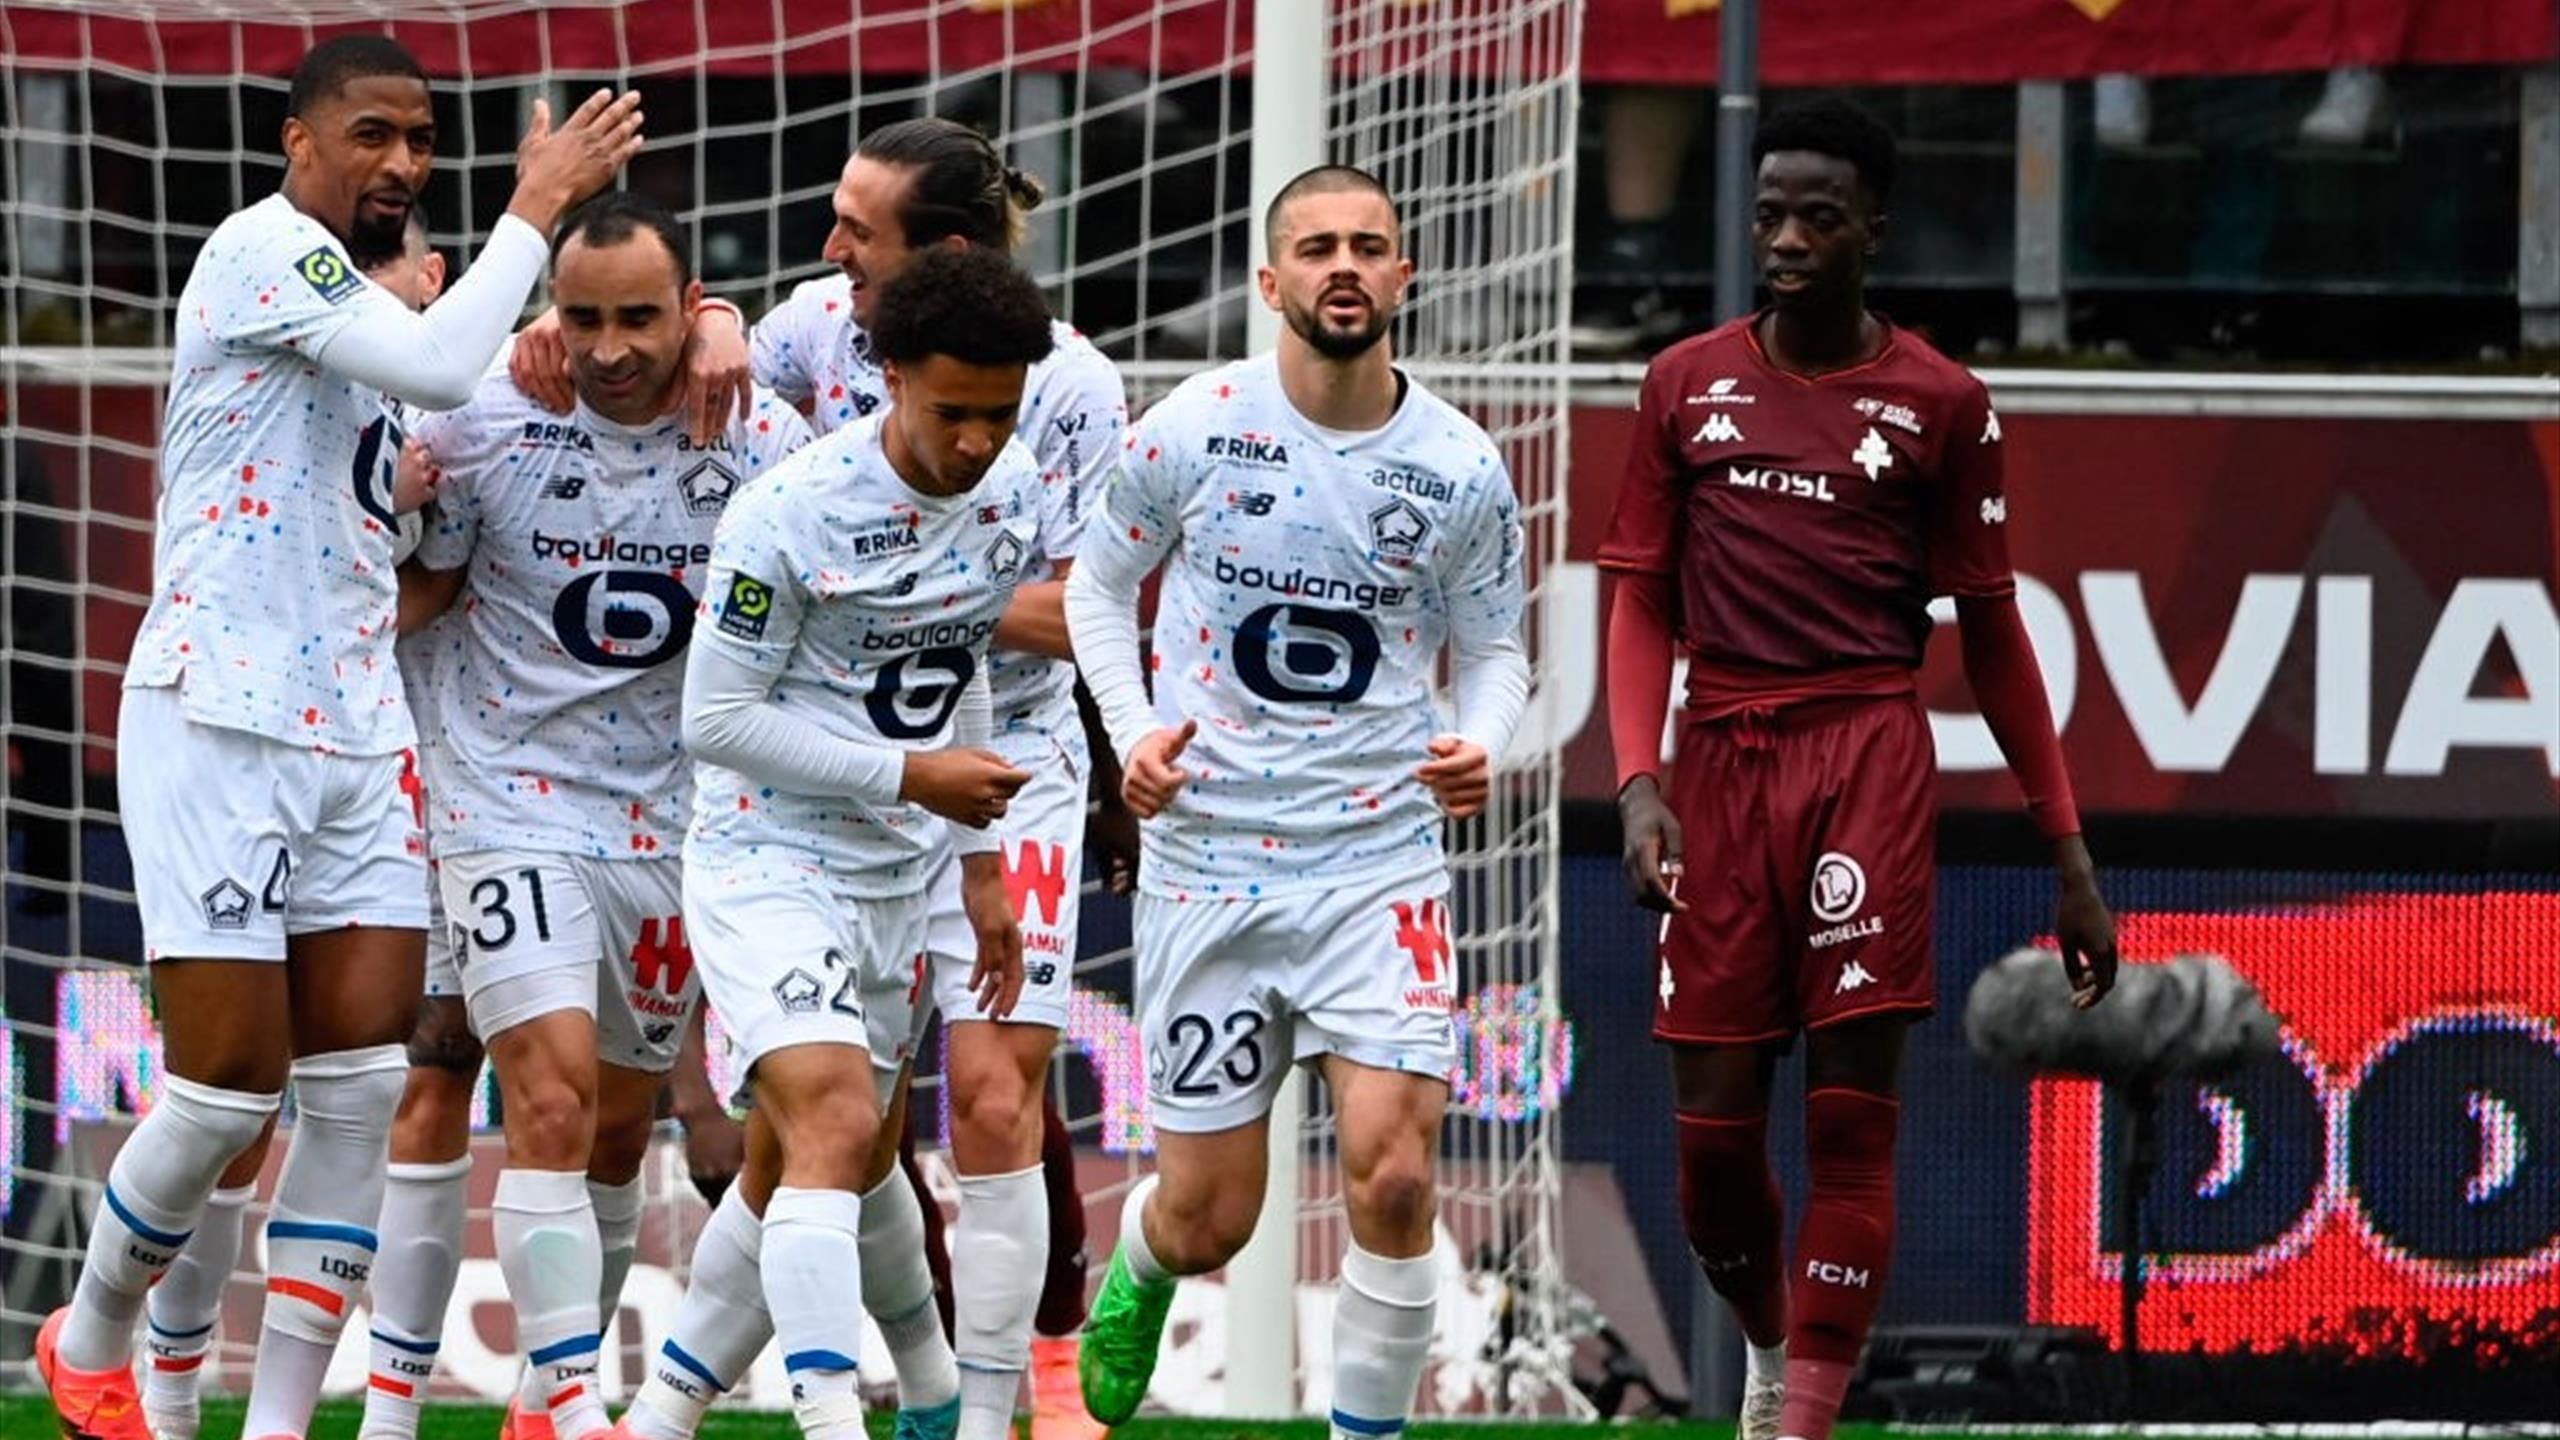 Ligue 1 - 31e journée : Lille renverse Metz (1-2) et monte provisoirement sur le podium thumbnail